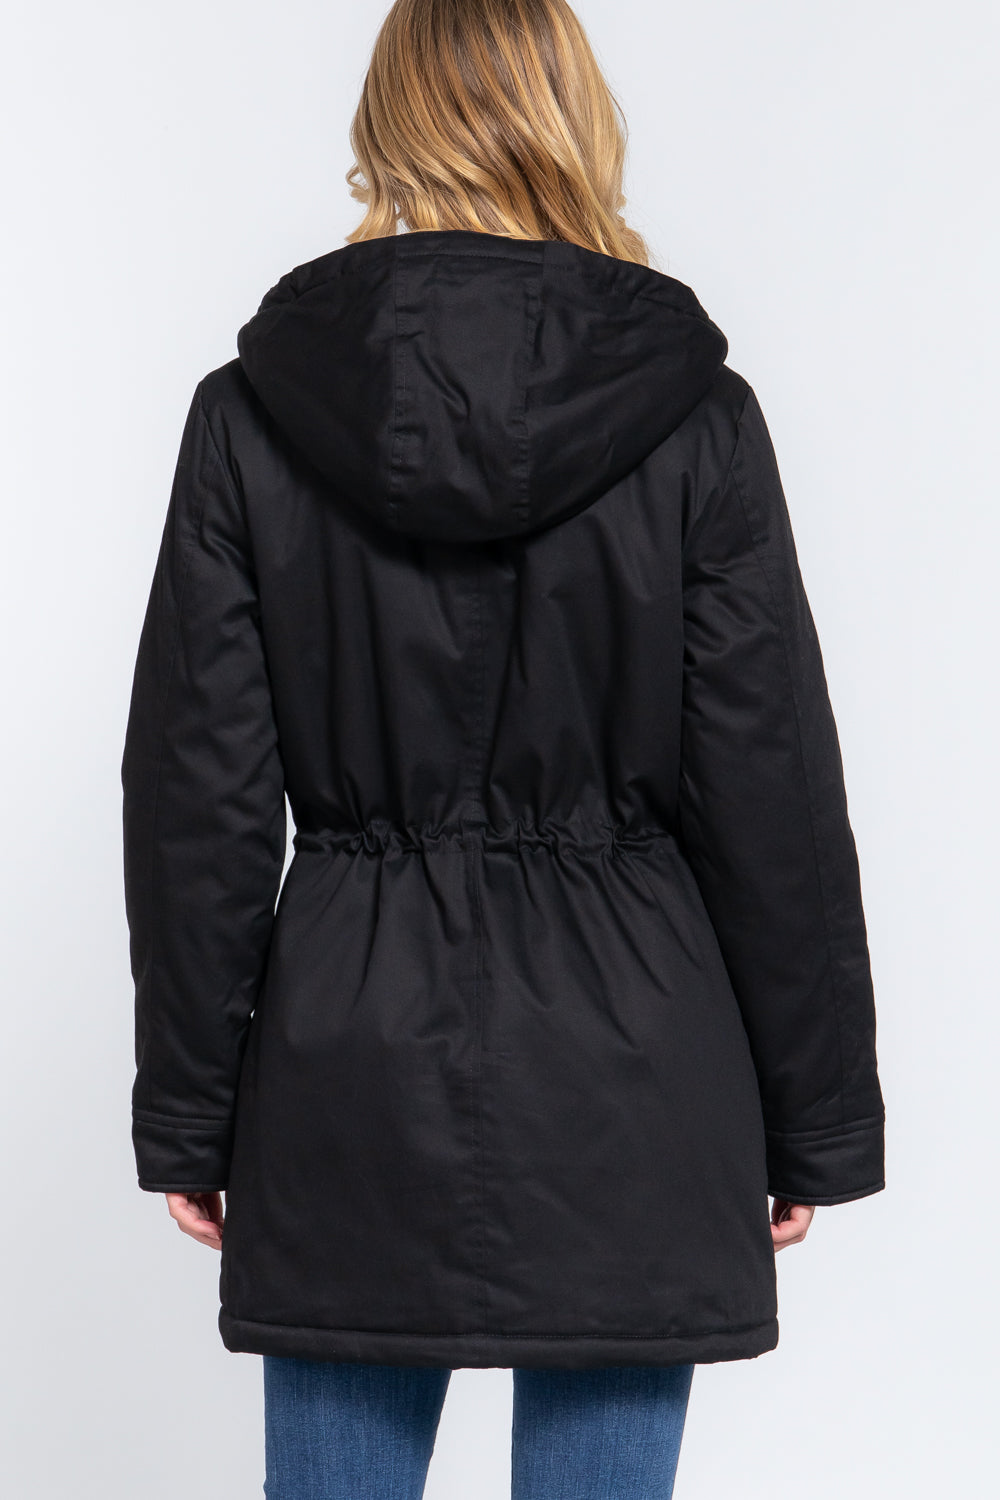 Fleece Lined Utility Jacket in Black